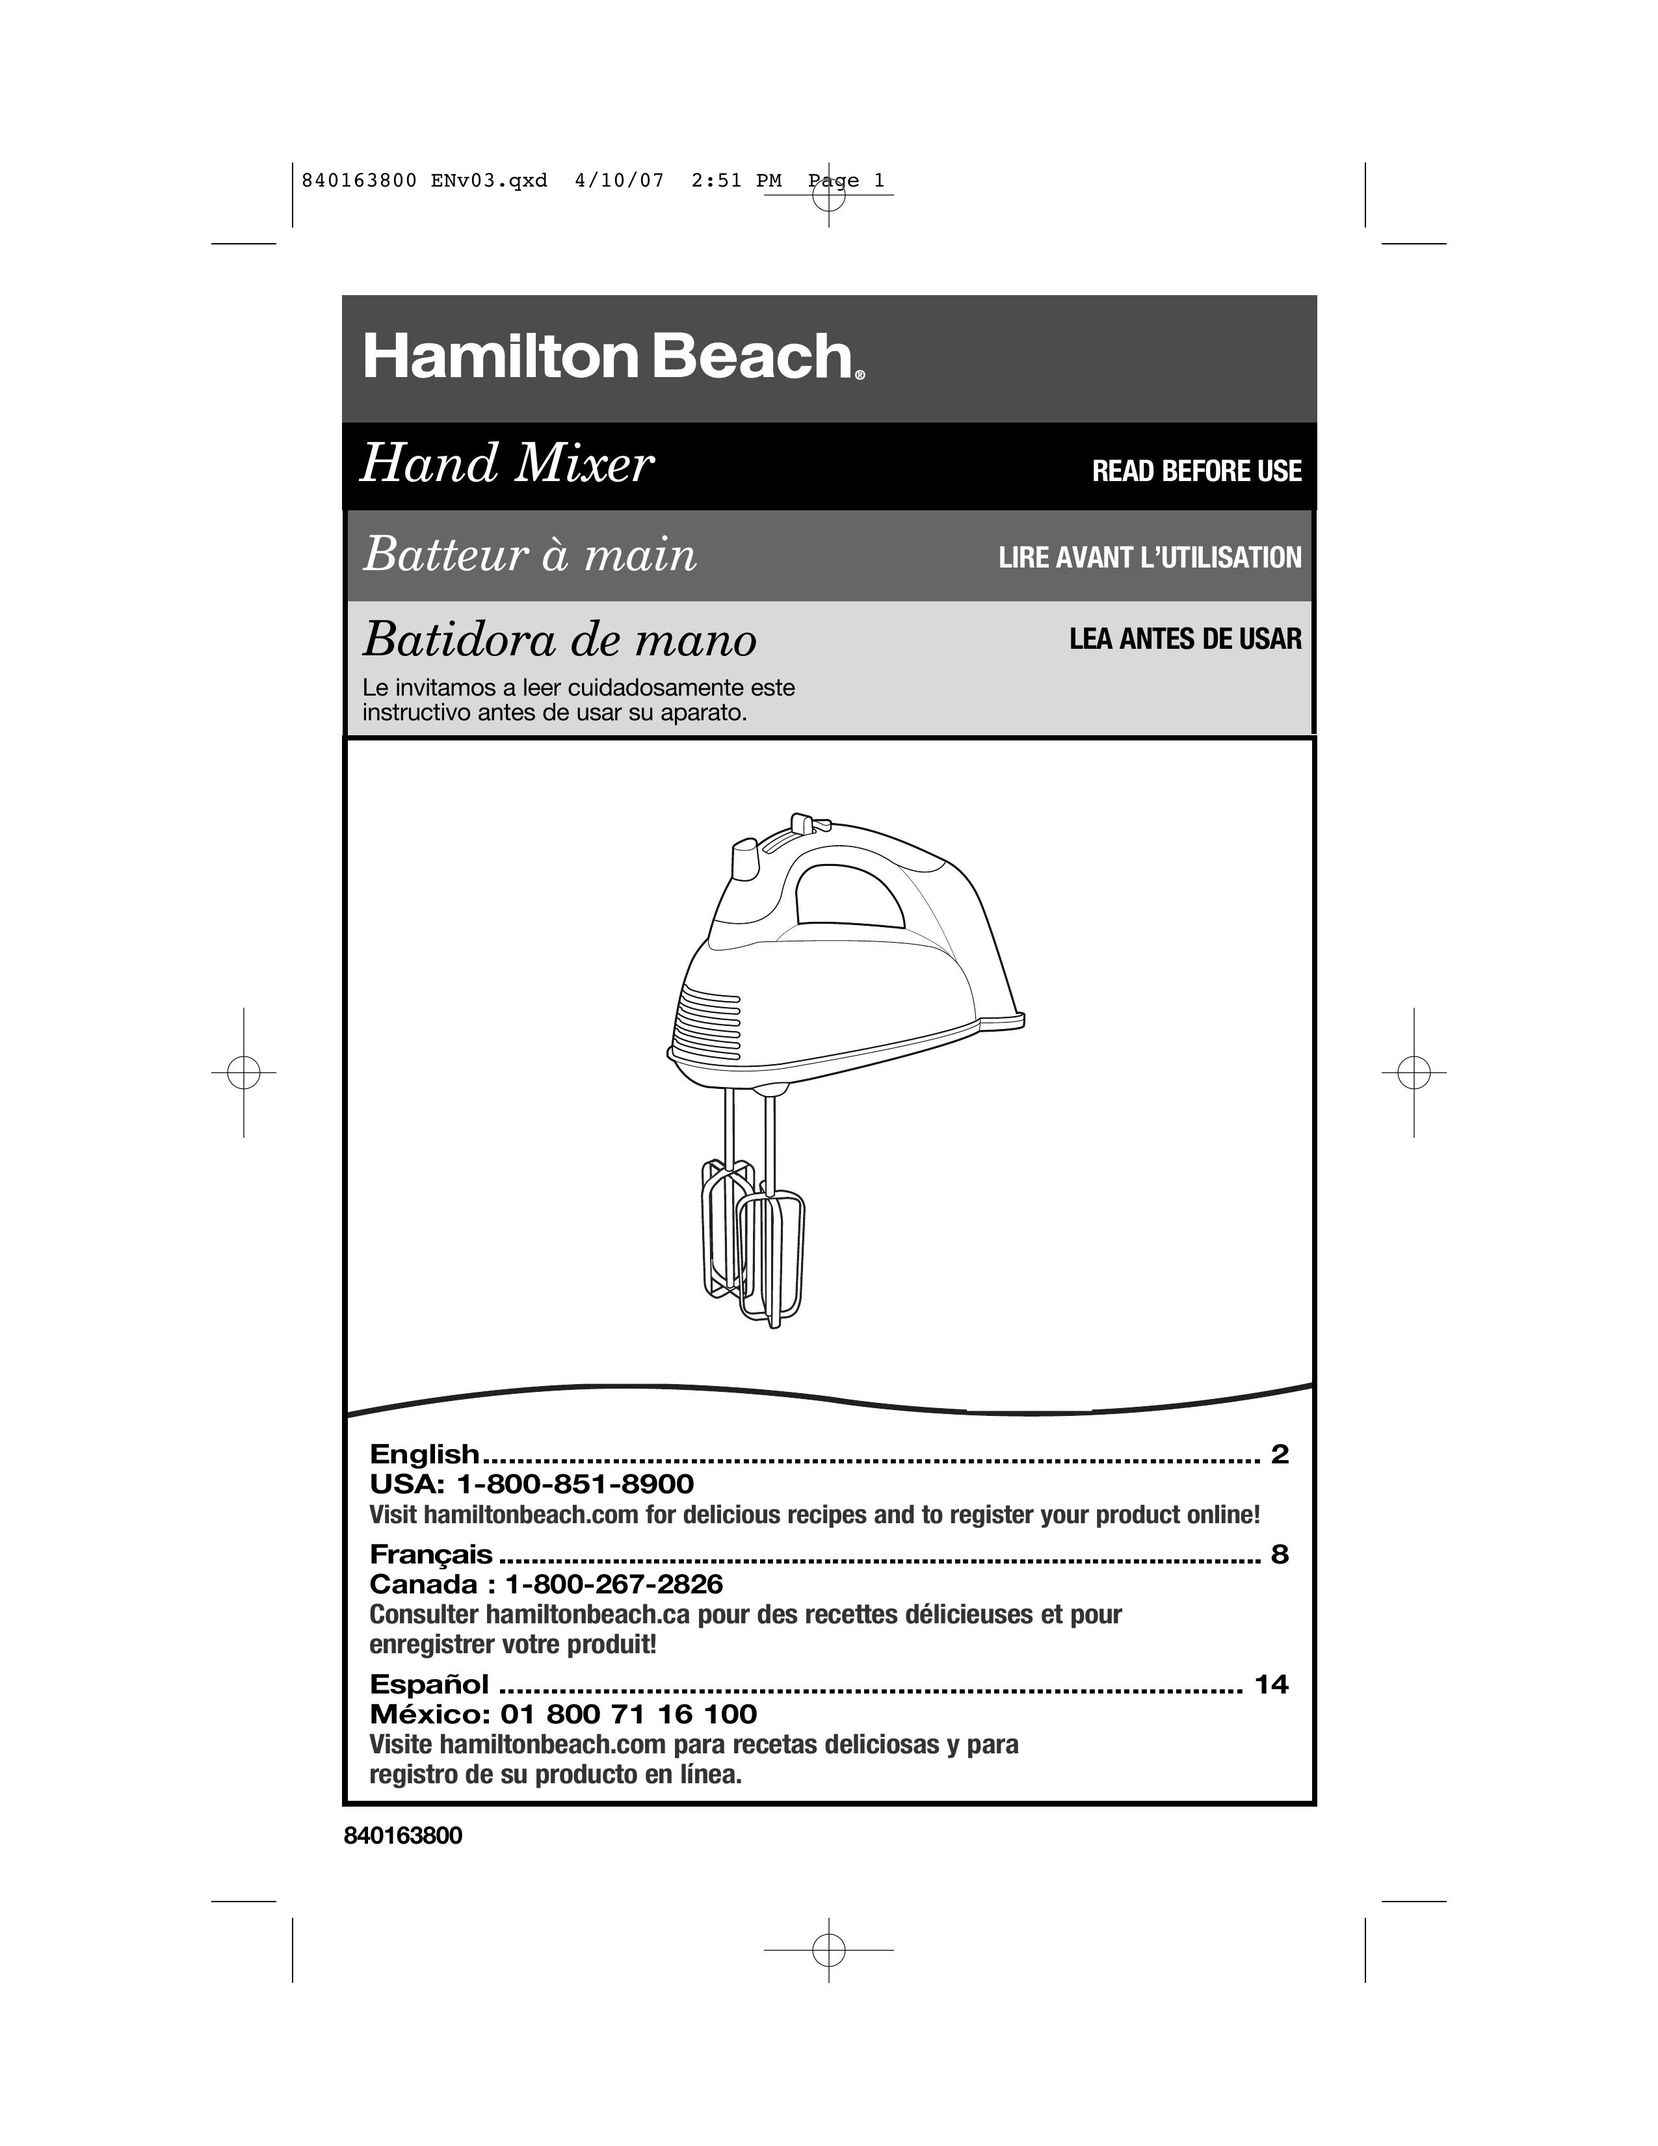 Hamilton Beach 840163800 Mixer User Manual